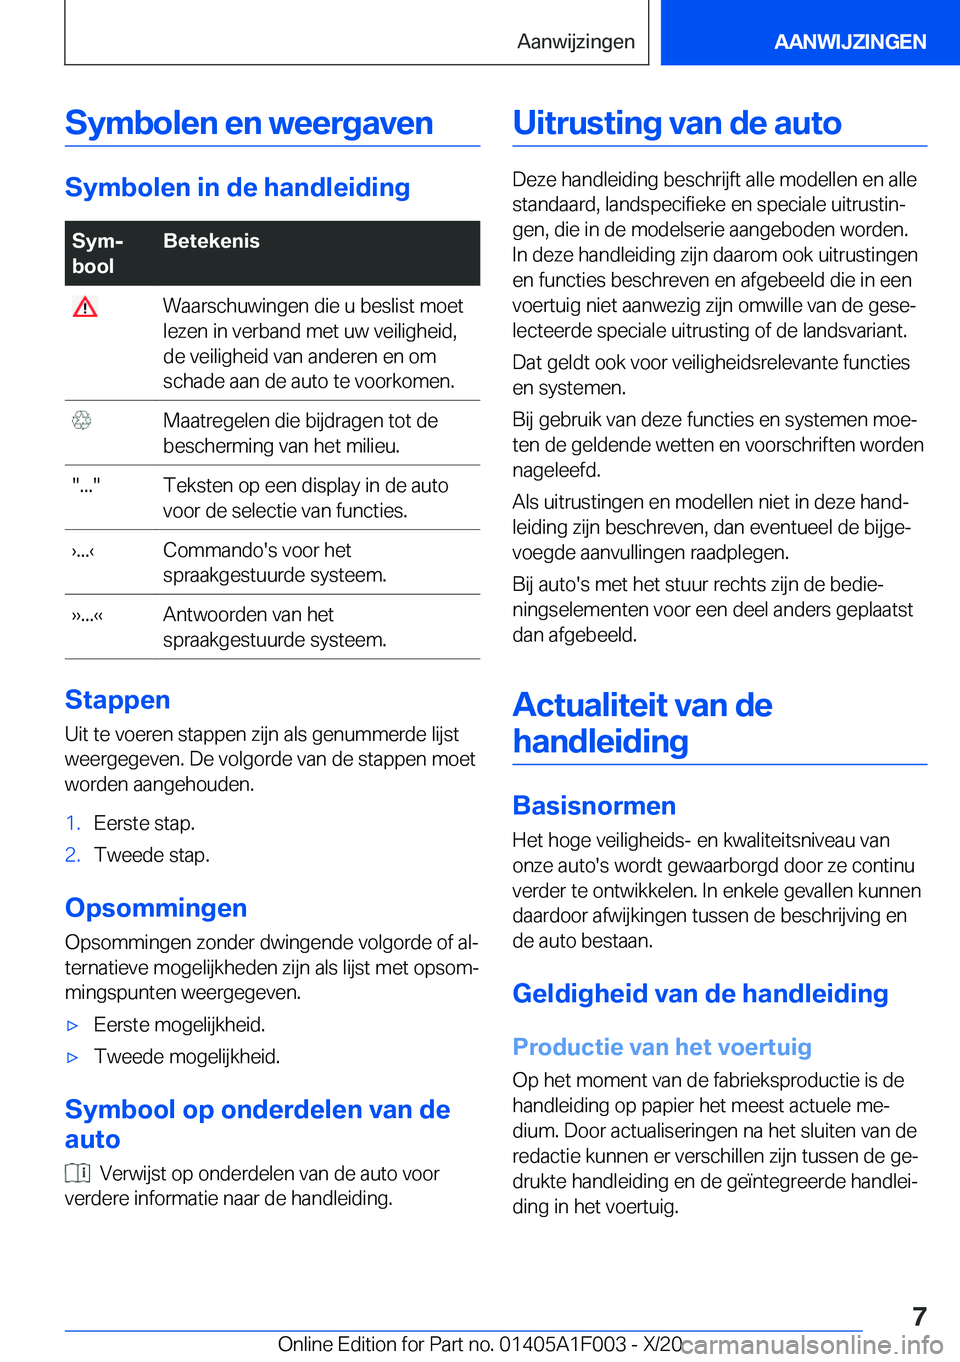 BMW X7 2021  Instructieboekjes (in Dutch) �S�y�m�b�o�l�e�n��e�n��w�e�e�r�g�a�v�e�n
�S�y�m�b�o�l�e�n��i�n��d�e��h�a�n�d�l�e�i�d�i�n�g
�S�y�mj
�b�o�o�l�B�e�t�e�k�e�n�i�s��W�a�a�r�s�c�h�u�w�i�n�g�e�n��d�i�e��u��b�e�s�l�i�s�t��m�o�e�t
